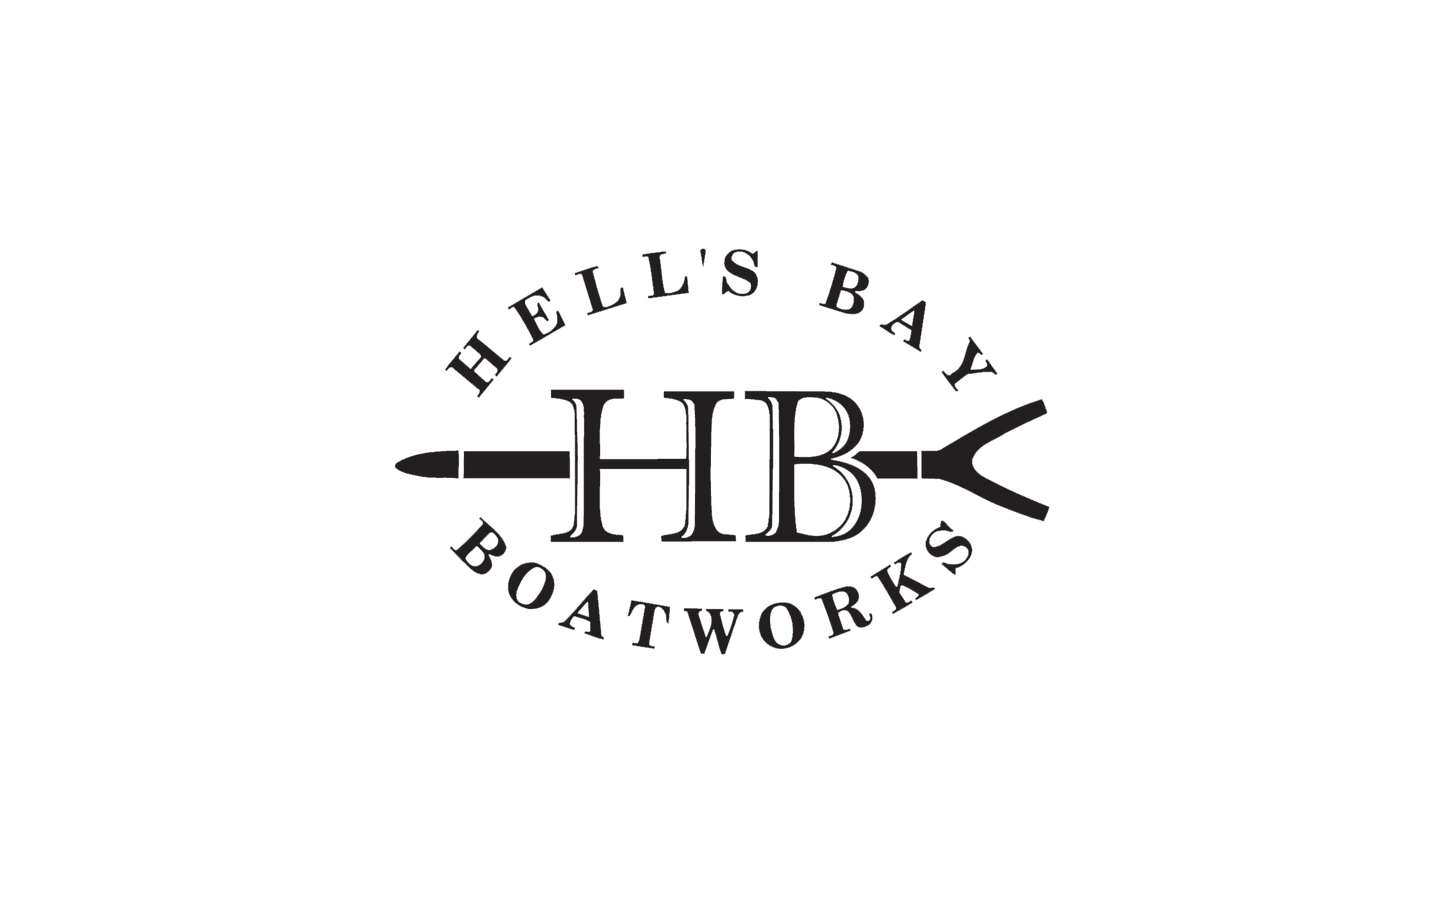 Hell's Bay Yeti Rambler Jr. 12oz Kids Bottle - Reef Blue – Hell's Bay  Boatworks Shop